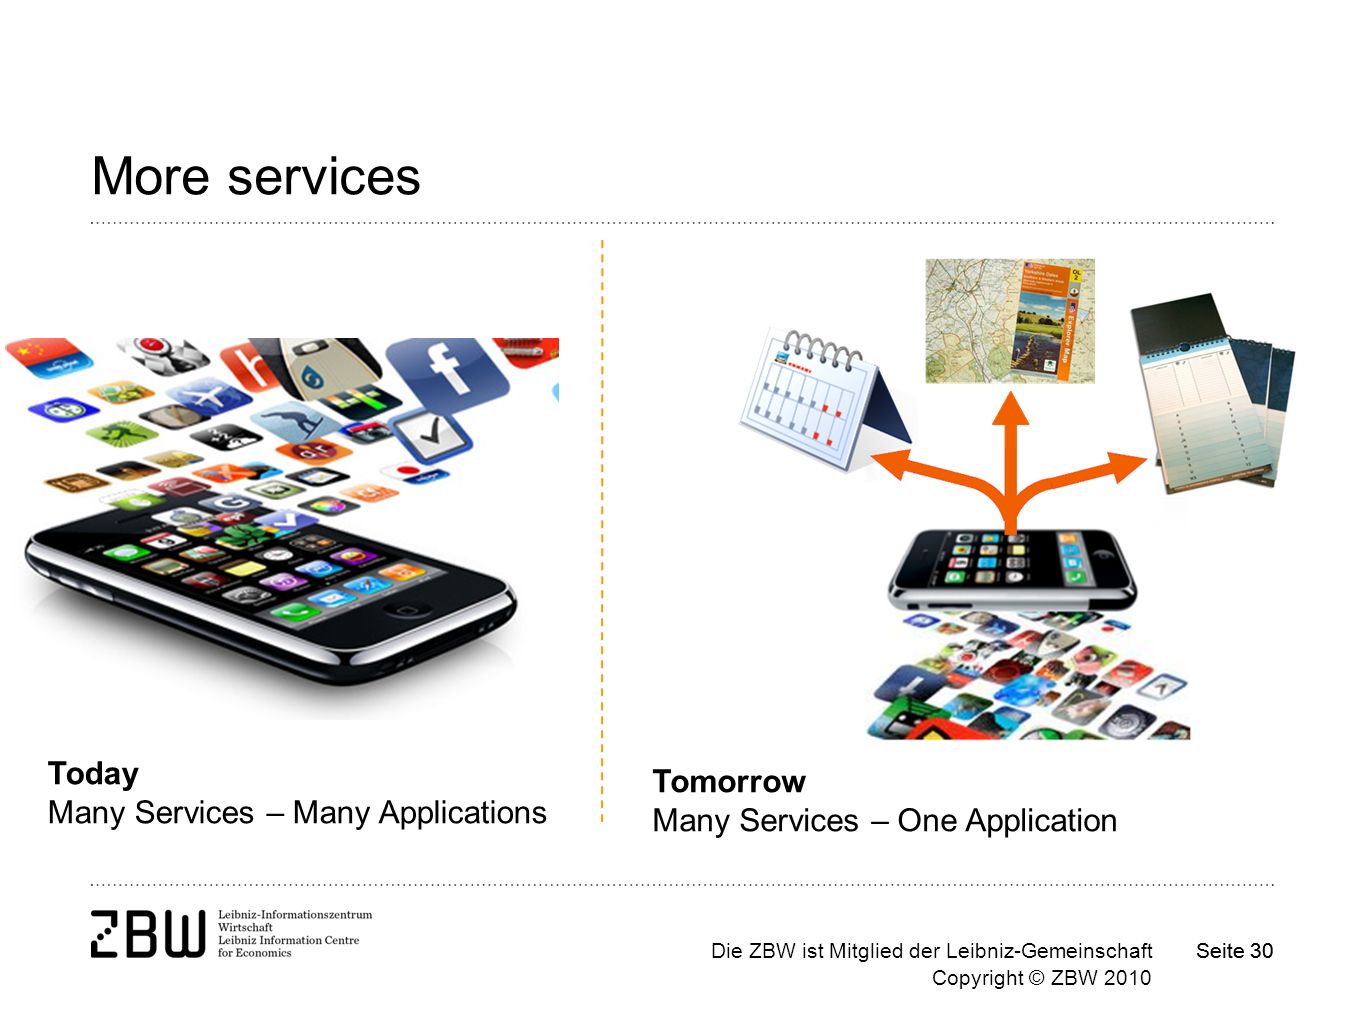 Die ZBW ist Mitglied der Leibniz-Gemeinschaft Copyright © ZBW 2010 Seite 30 More services Today Many Services – Many Applications Tomorrow Many Services – One Application